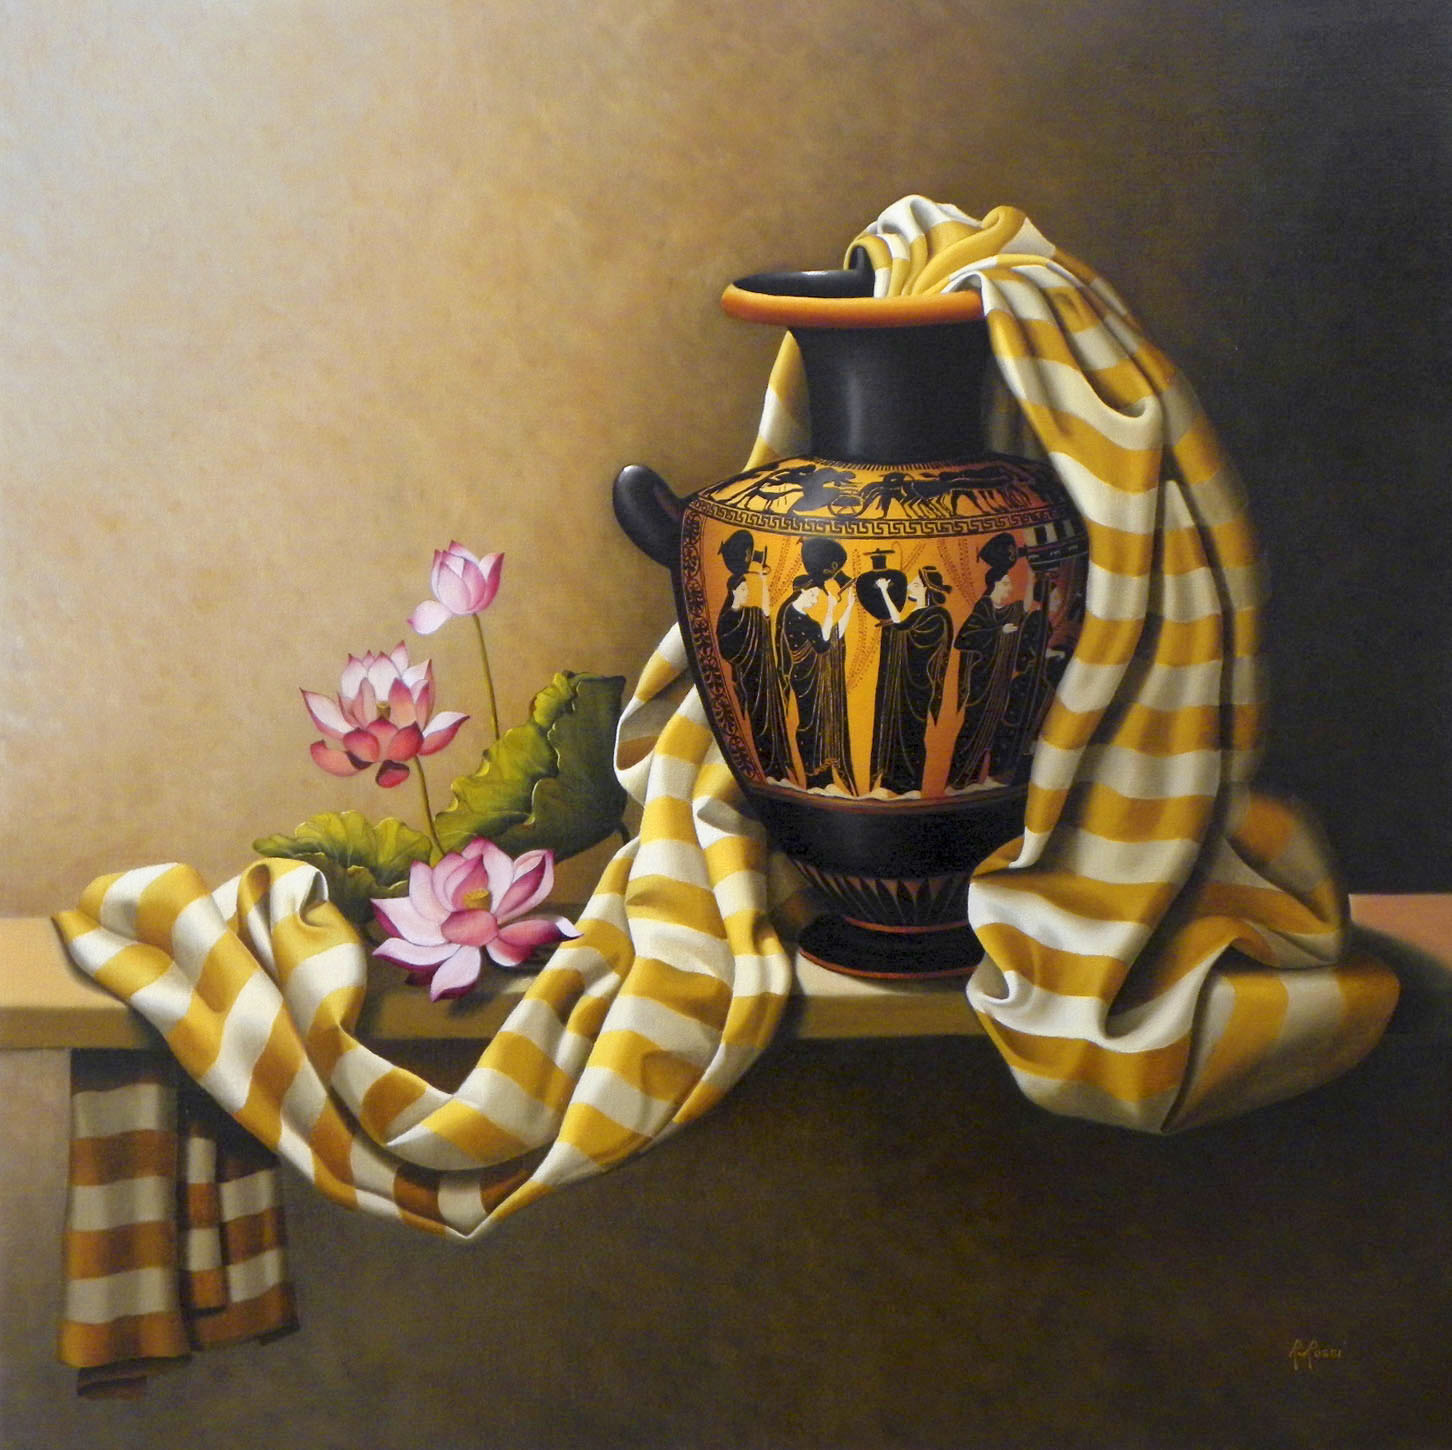 2009 roberta rossi – Fanciulle alla fonte – olio su tela – 70 x 70